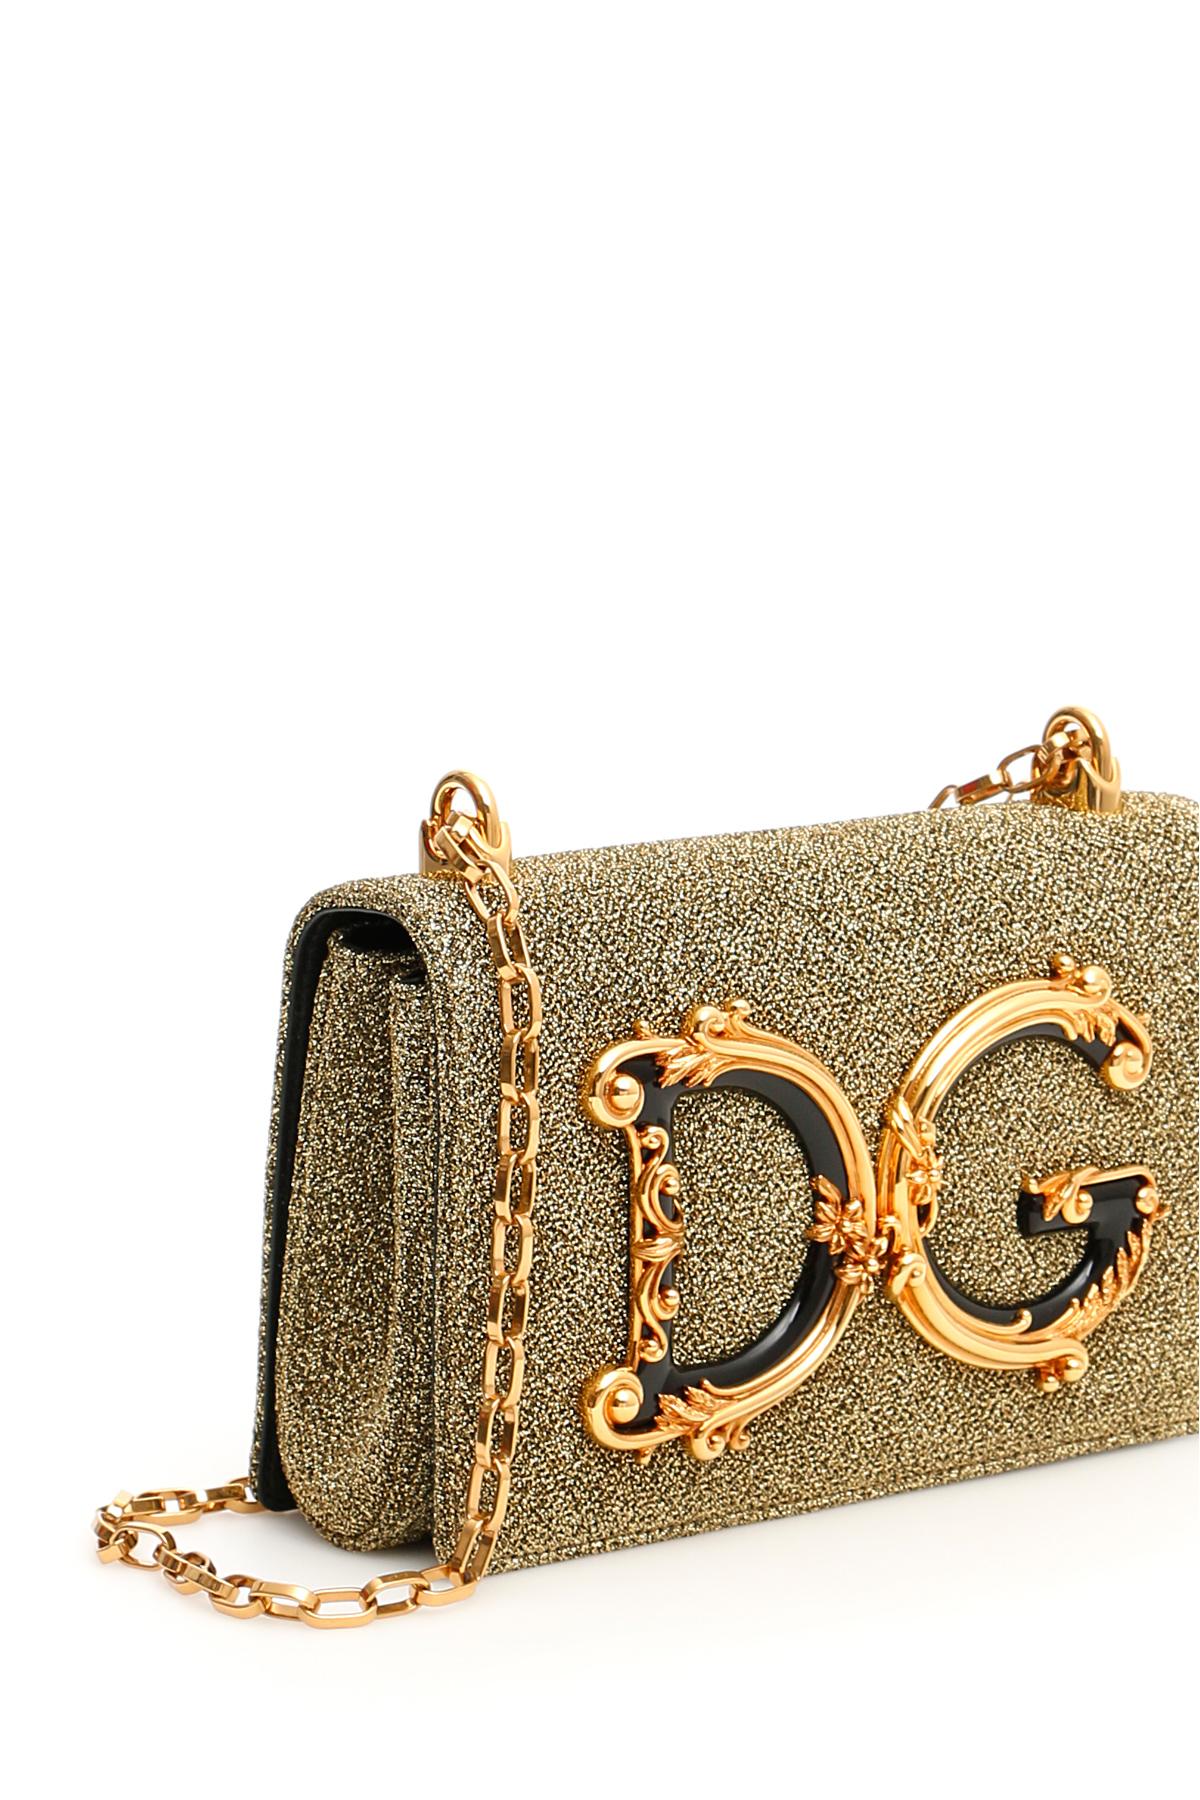 Dolce & Gabbana Lurex Dg Girls Bag | Lyst